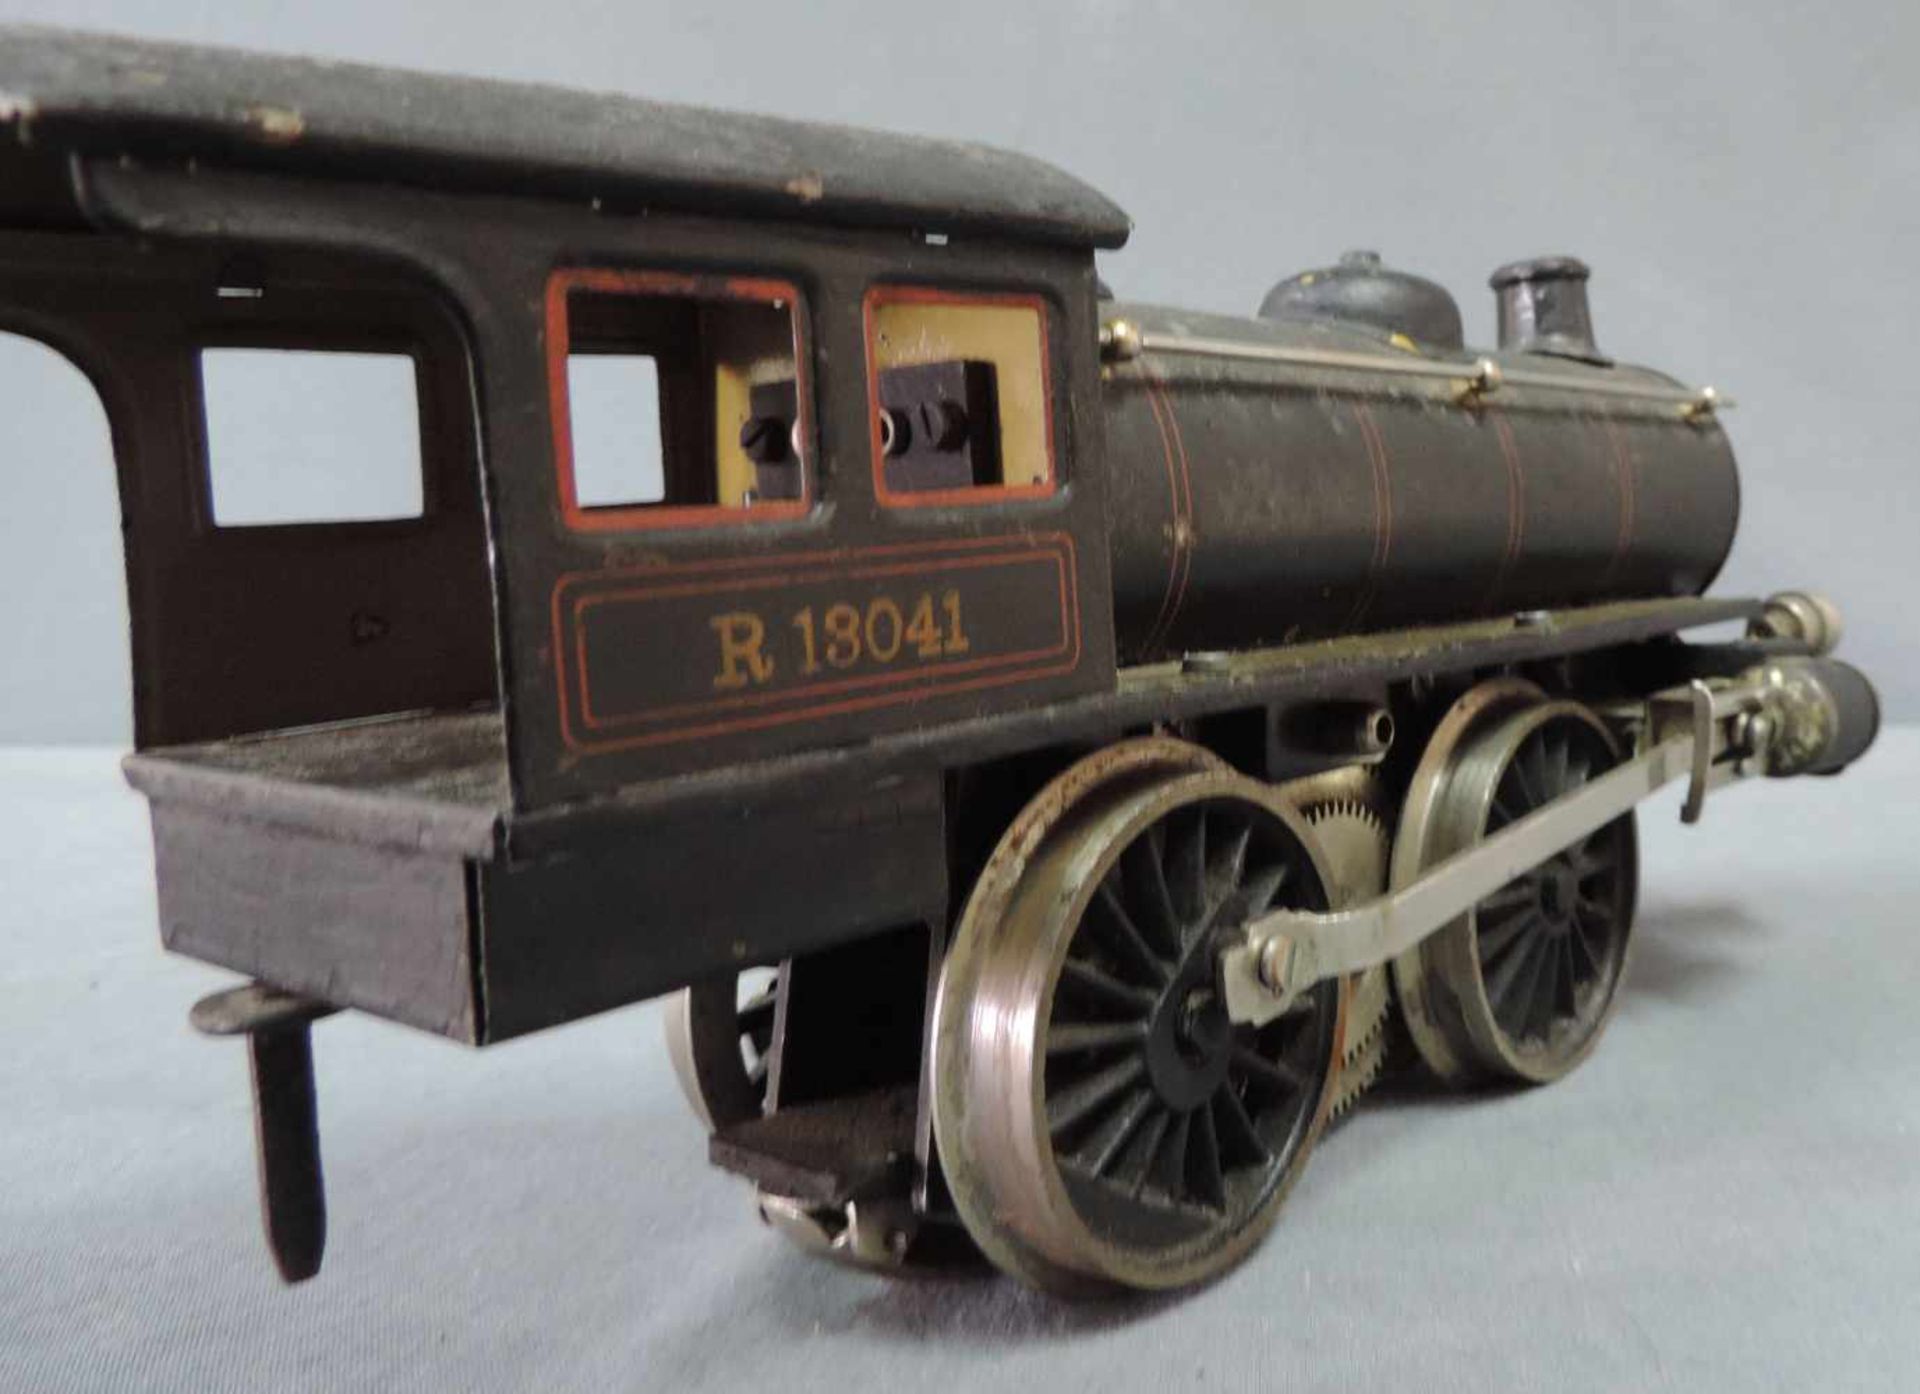 Modell Lokomotive. Märklin. "R 13041" Spur 1 27 cm x 10 cm. Modell Dampflock "R 13041" von Märklin - Bild 5 aus 8